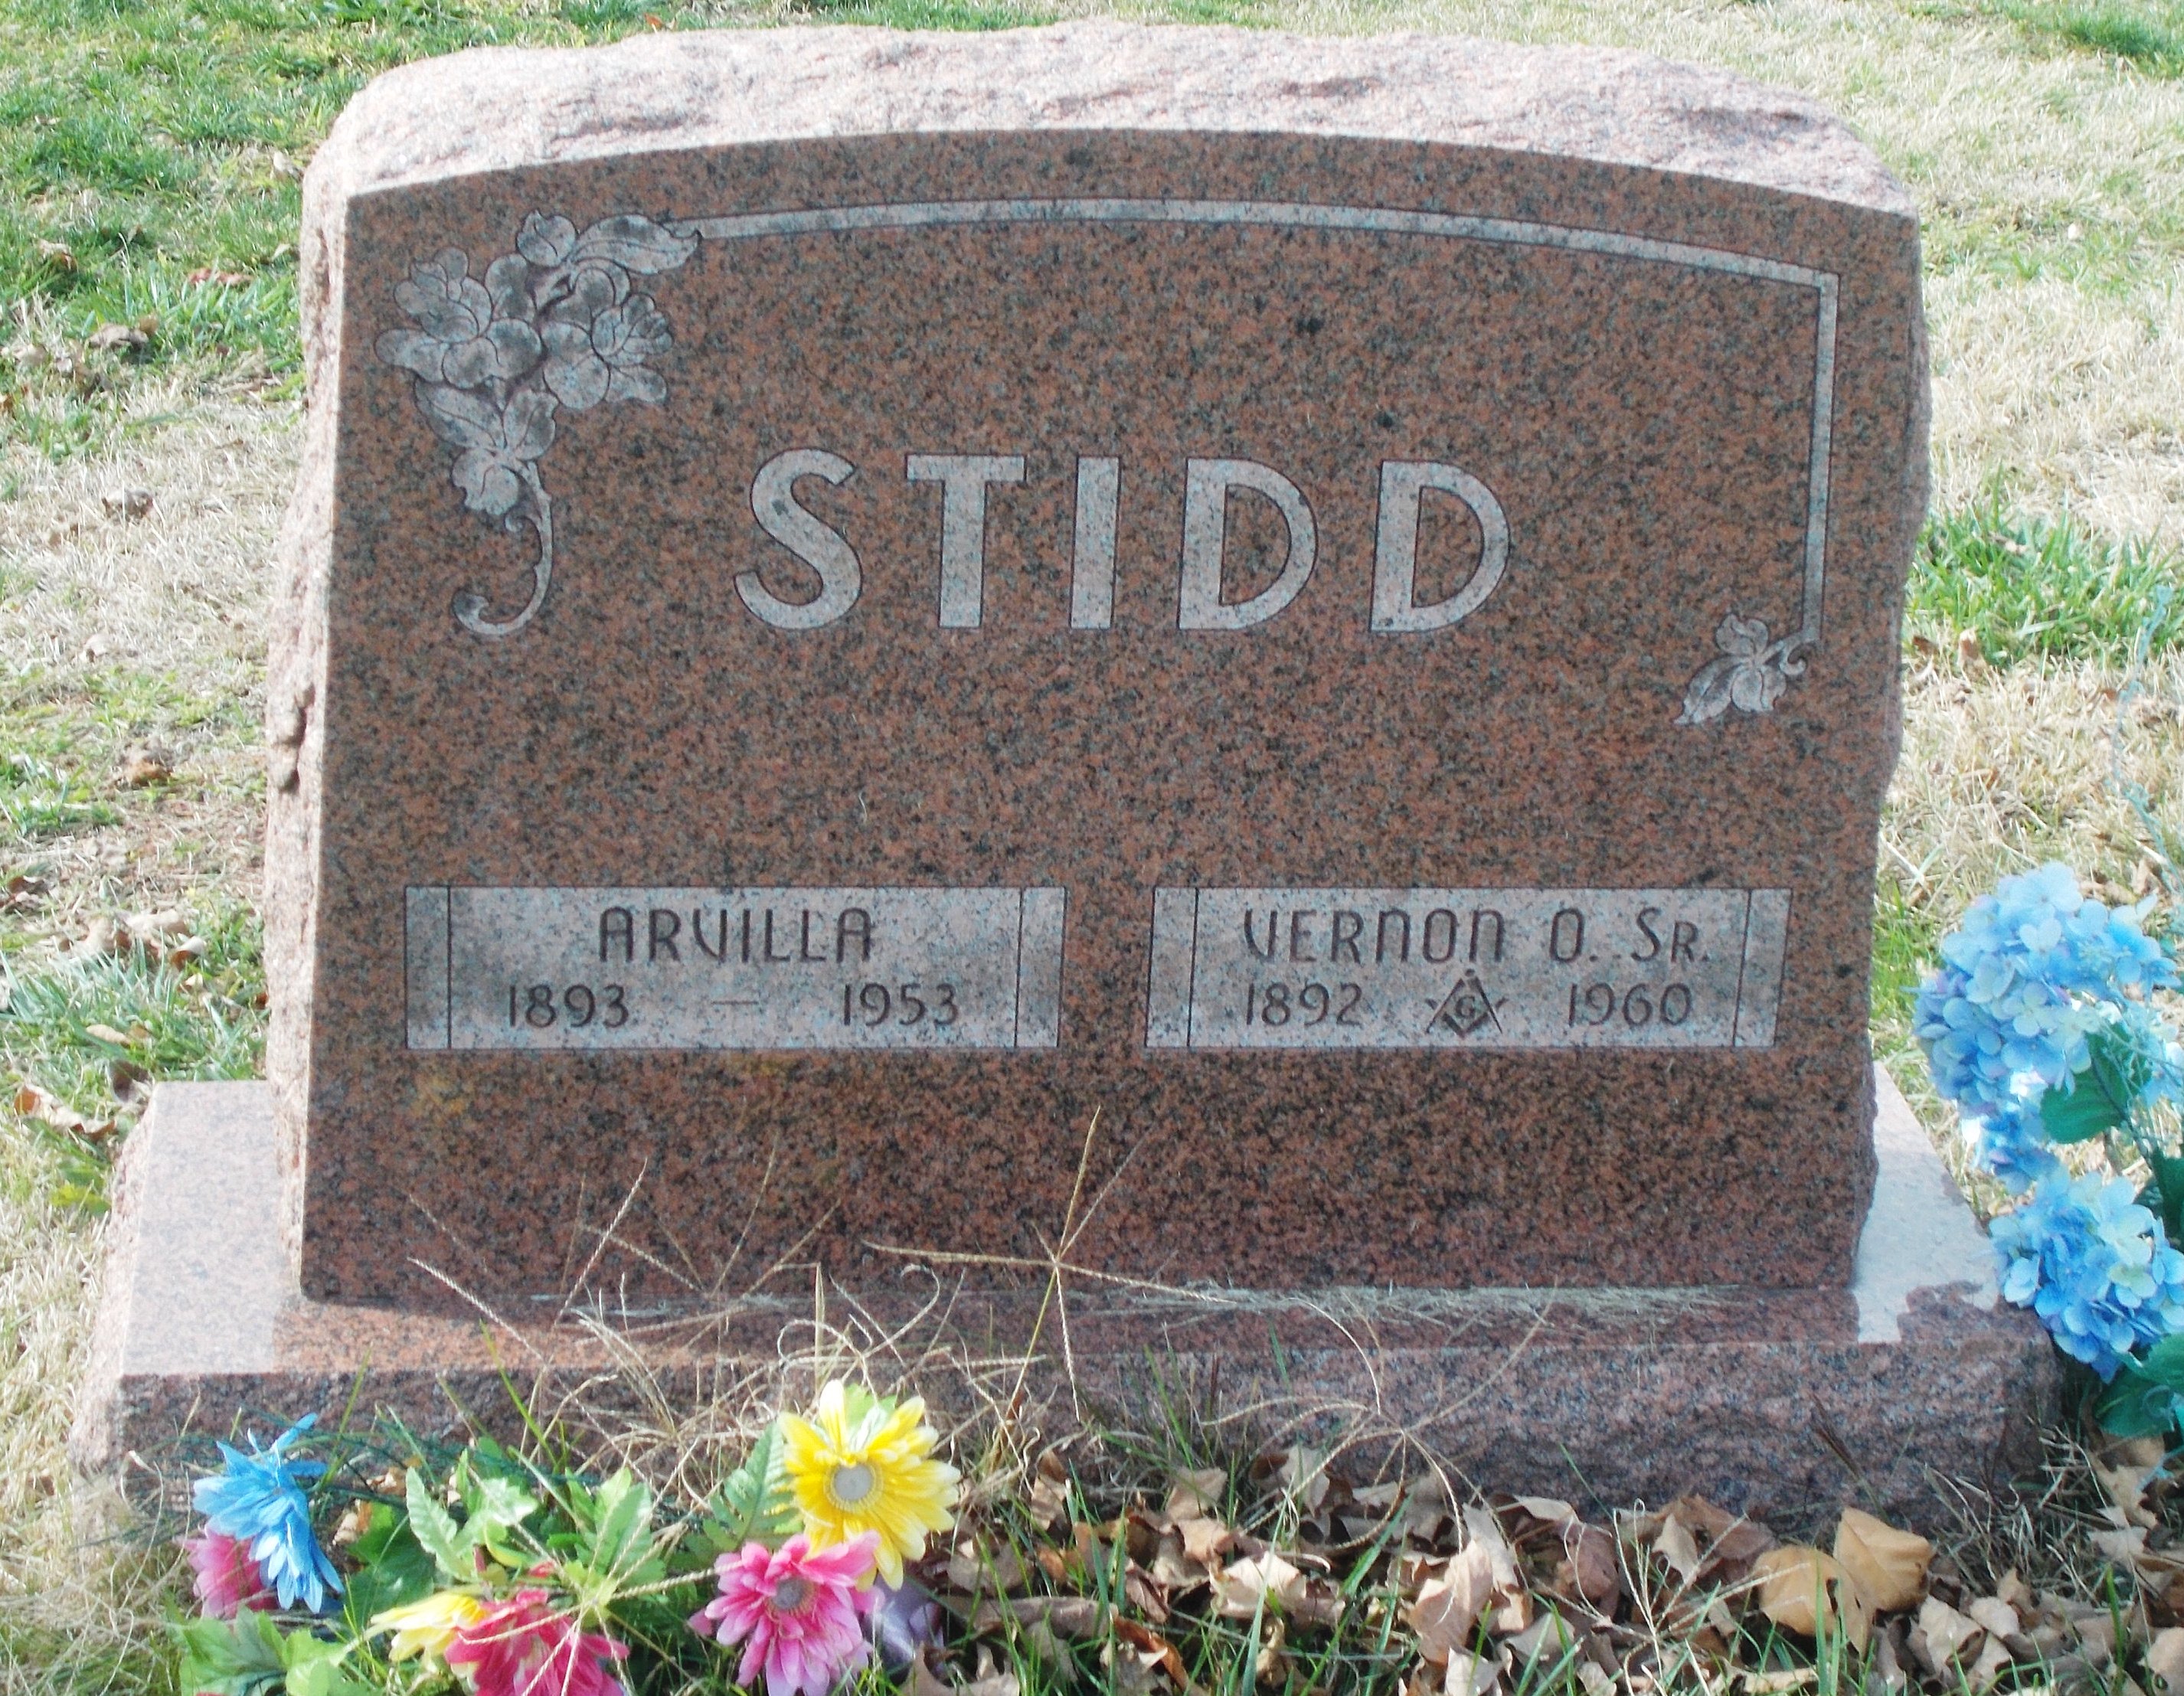 Vernon O Stidd, Sr